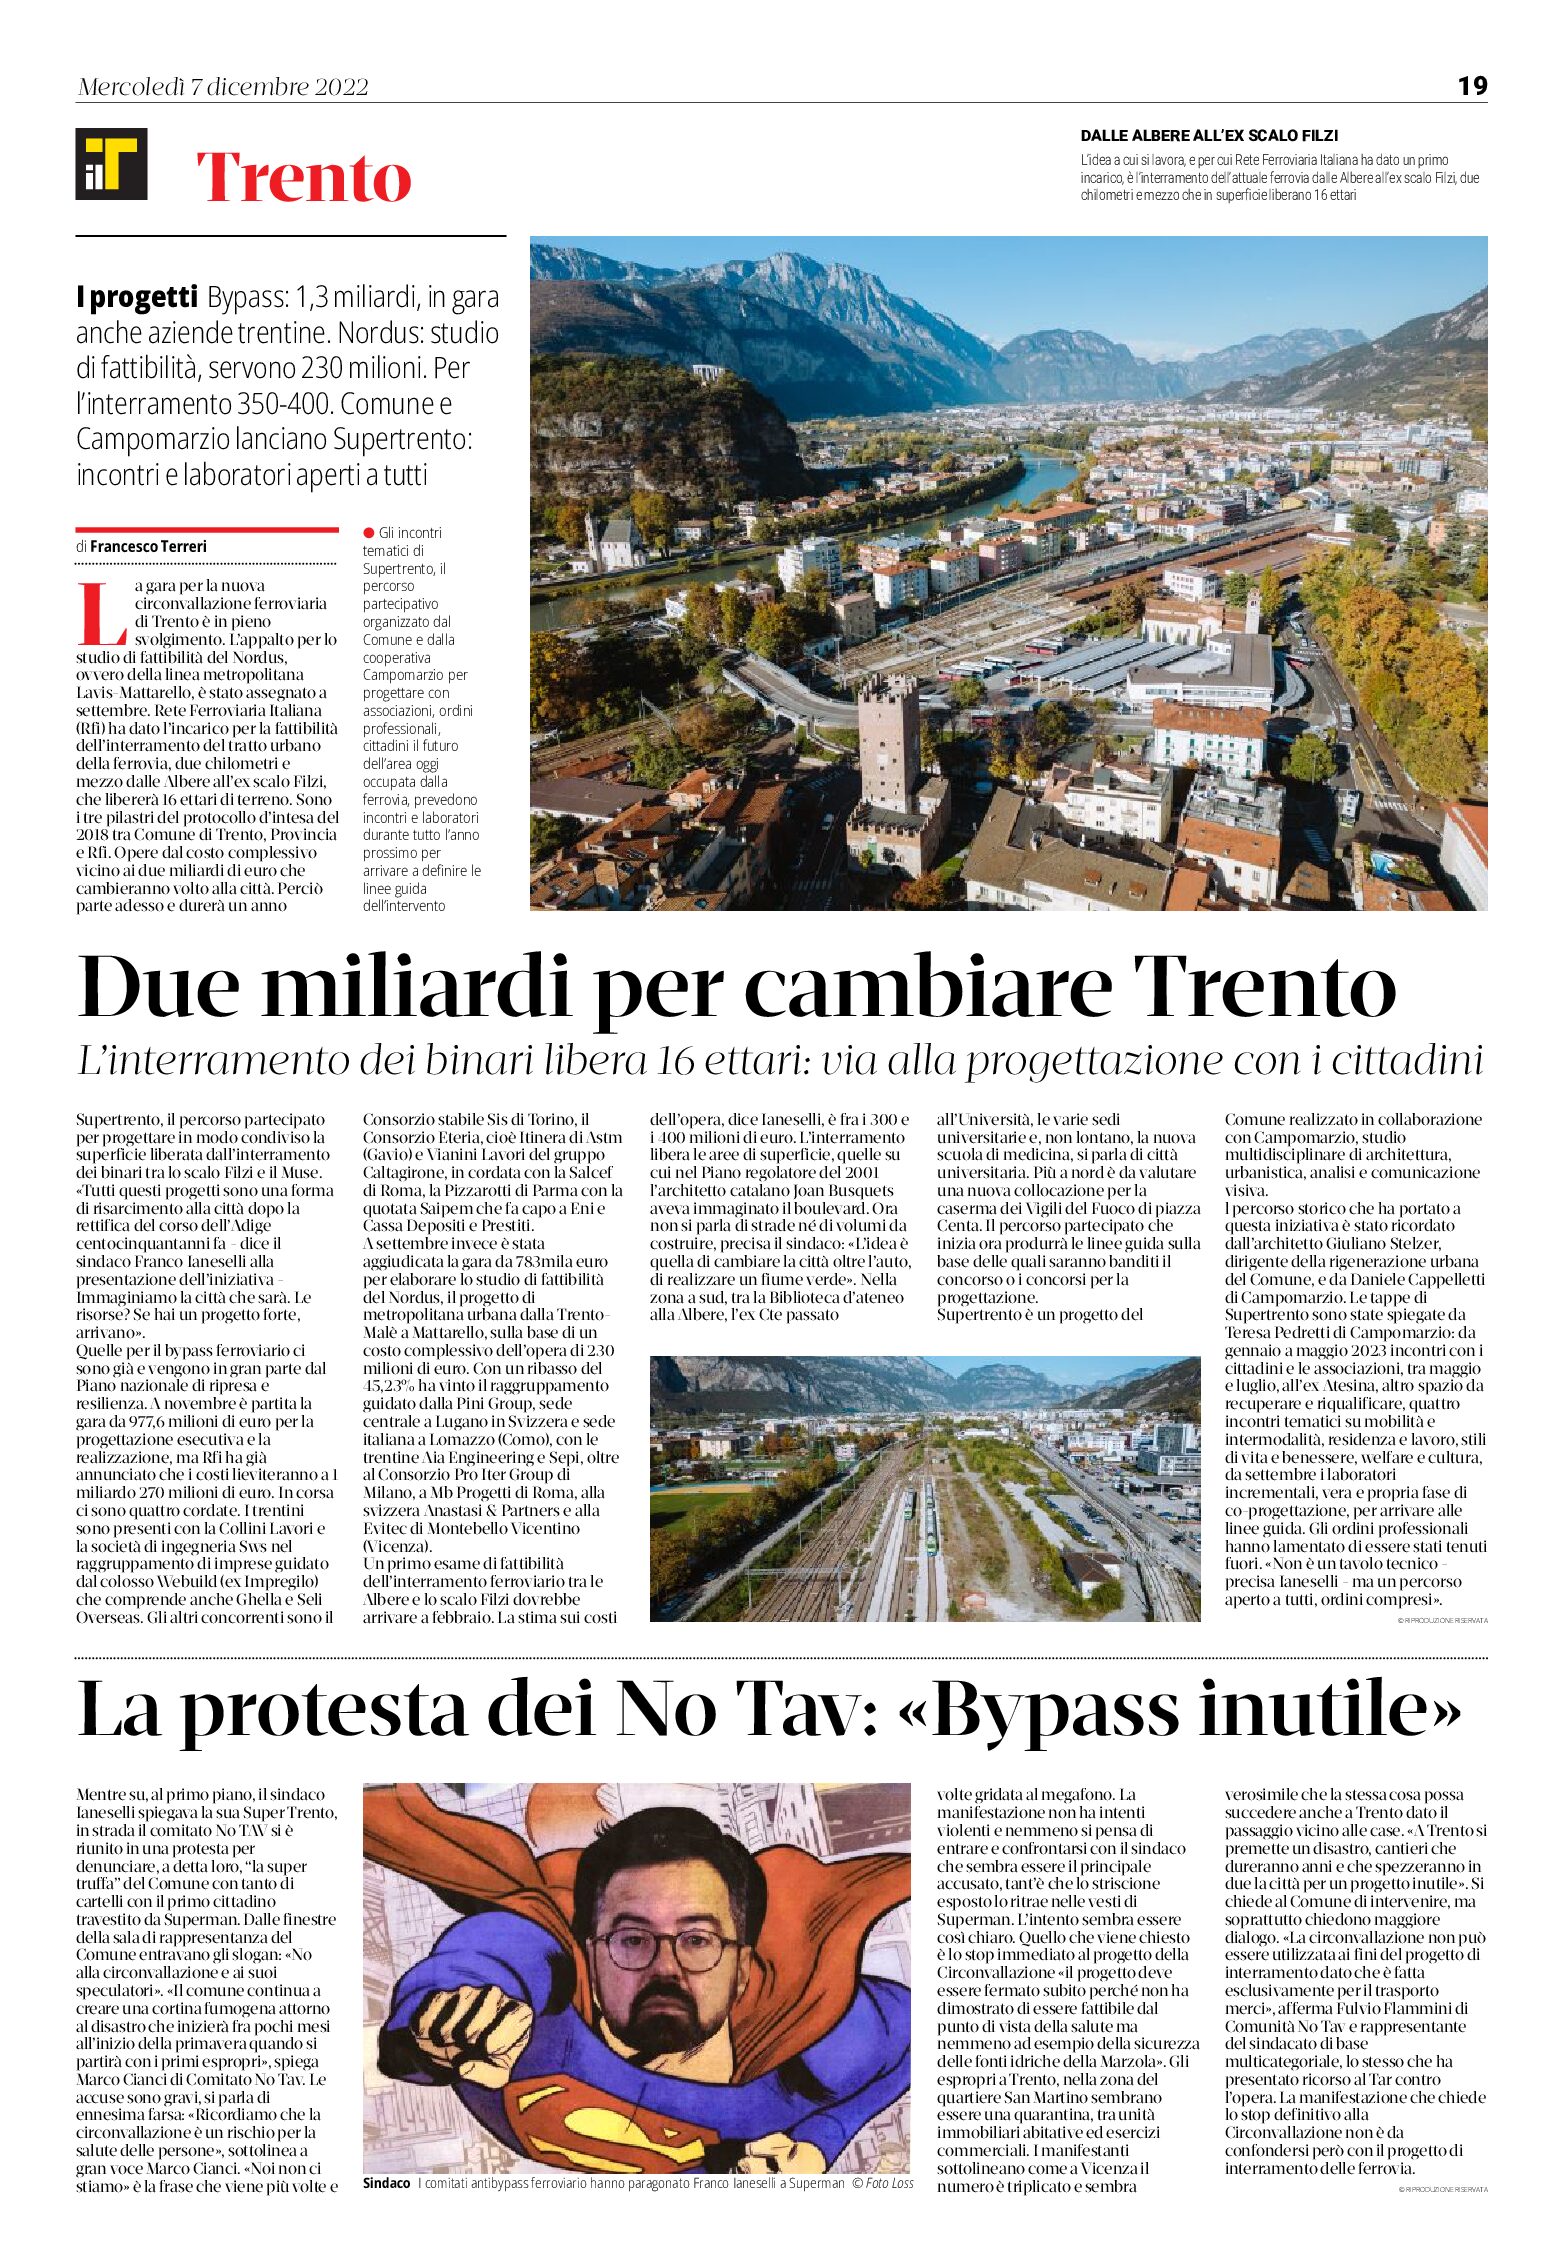 Trento: l’interramento dei binari libera 16 ettari. Due miliardi per cambiare la città